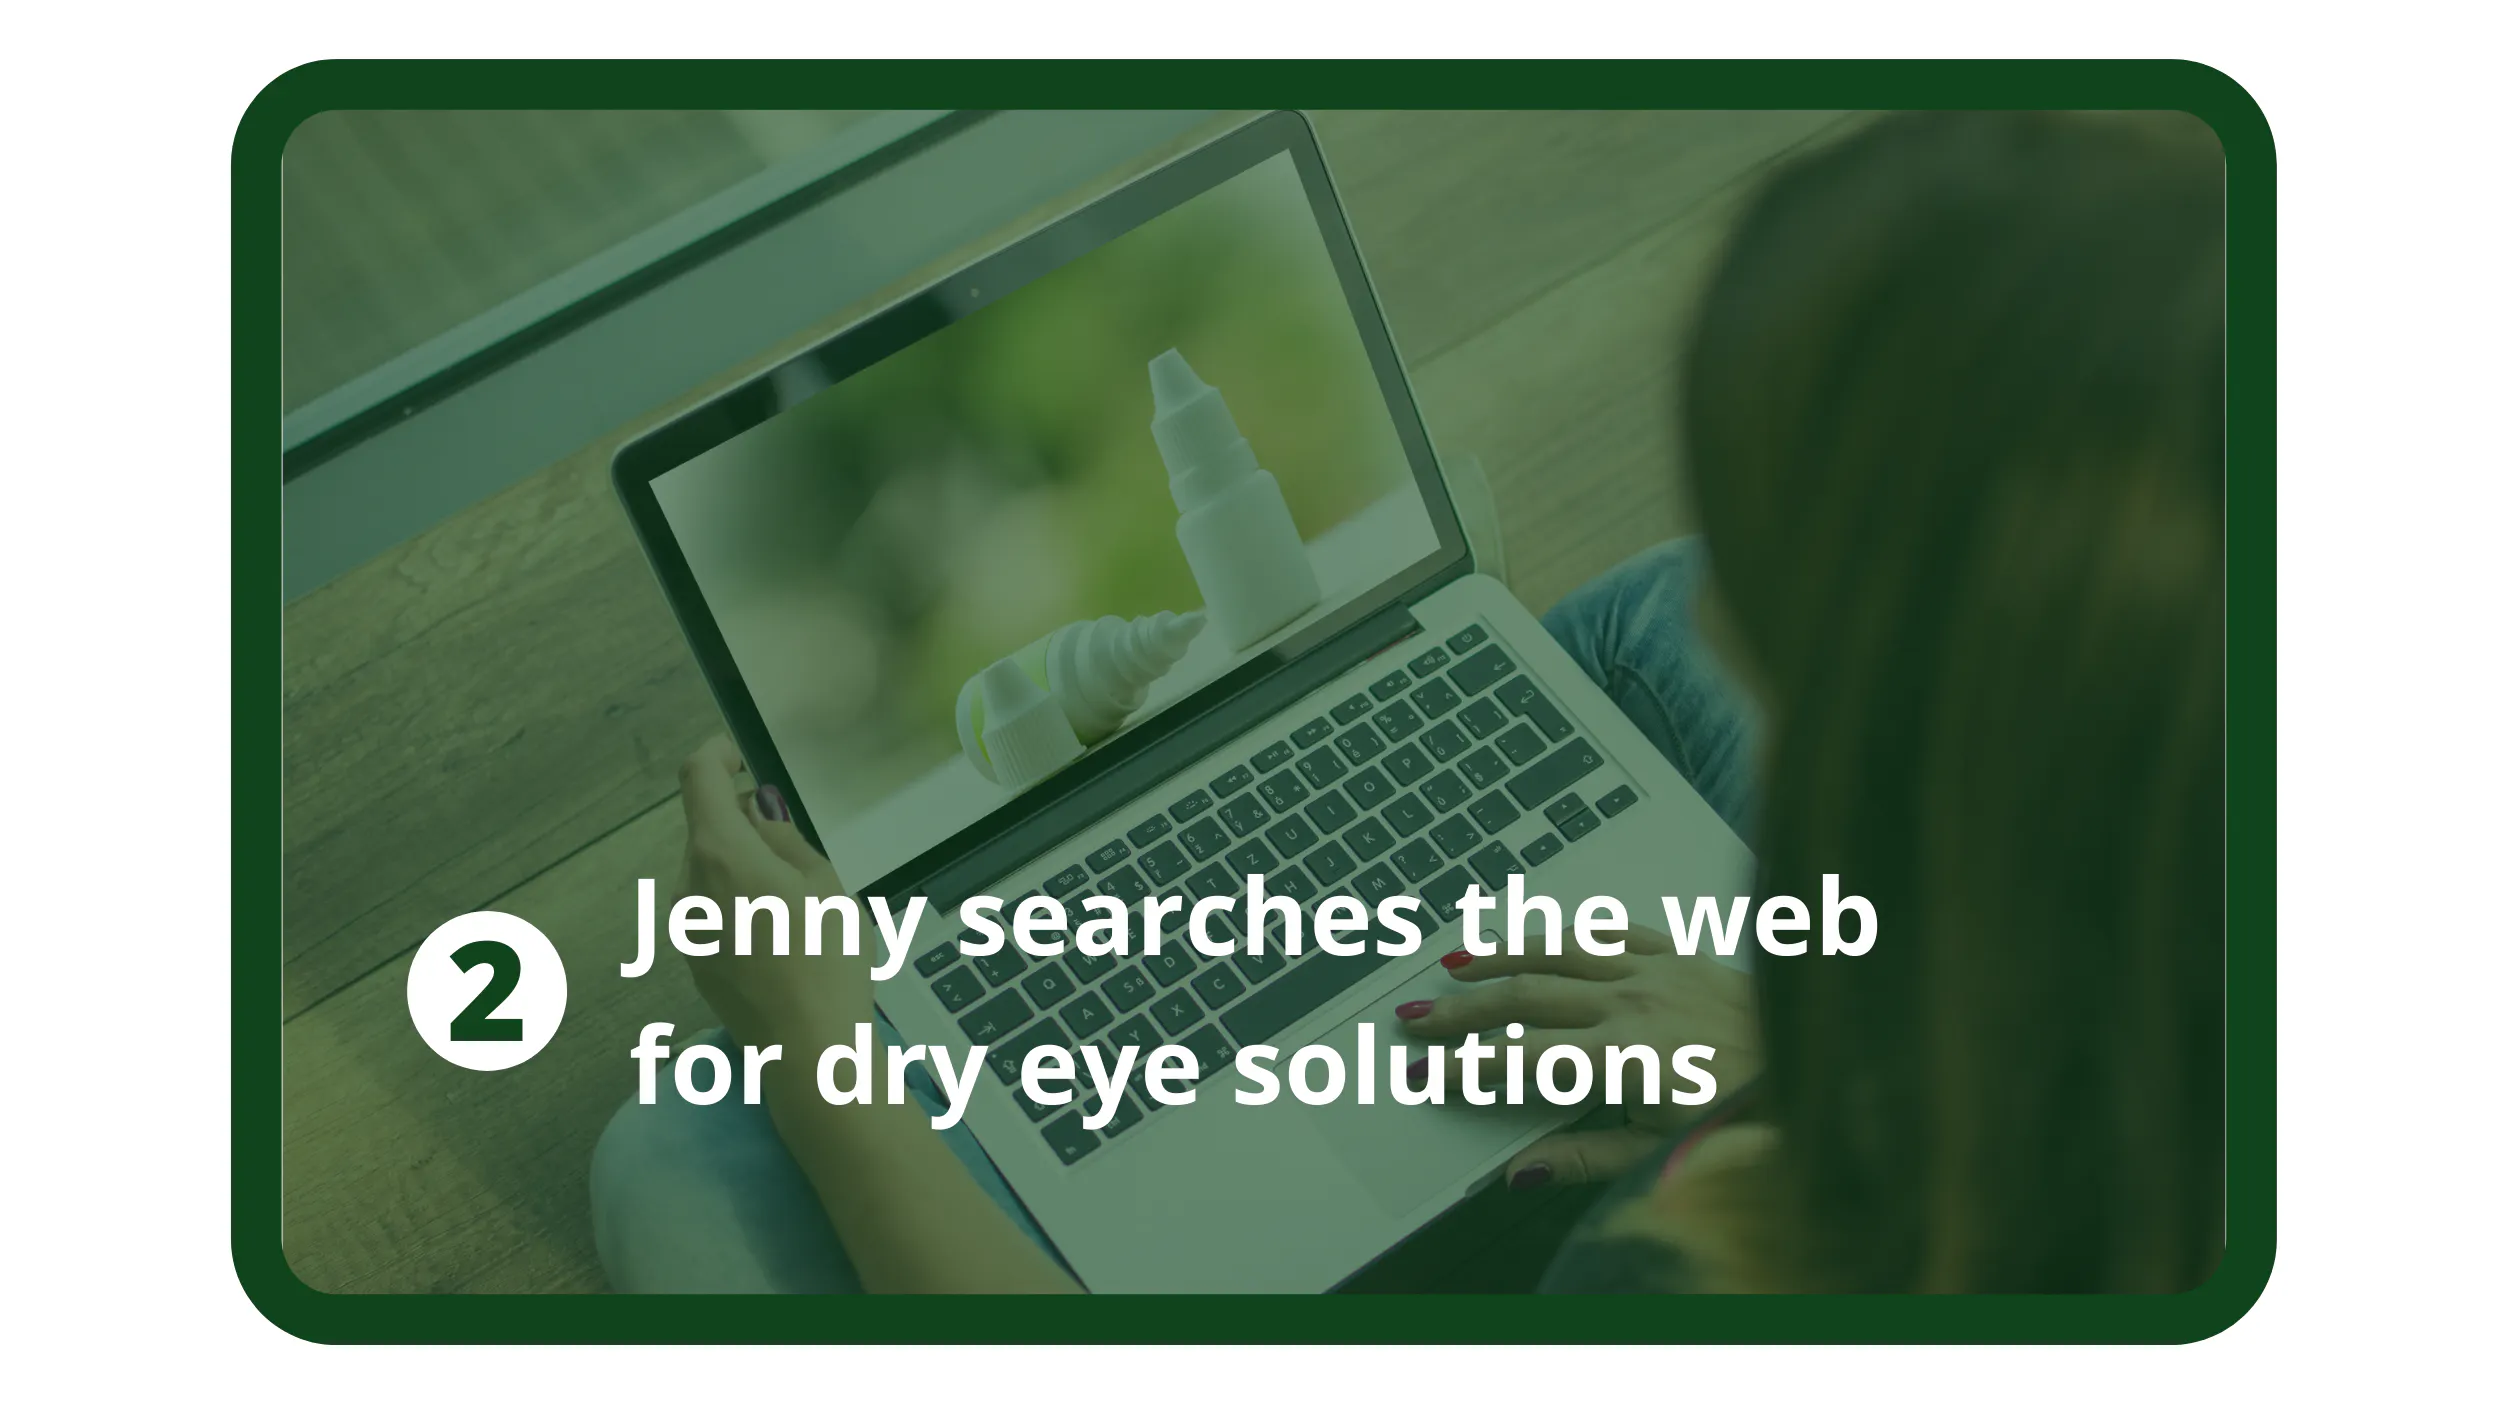 Jenny sucht im Internet nach Lösungen für trockene Augen